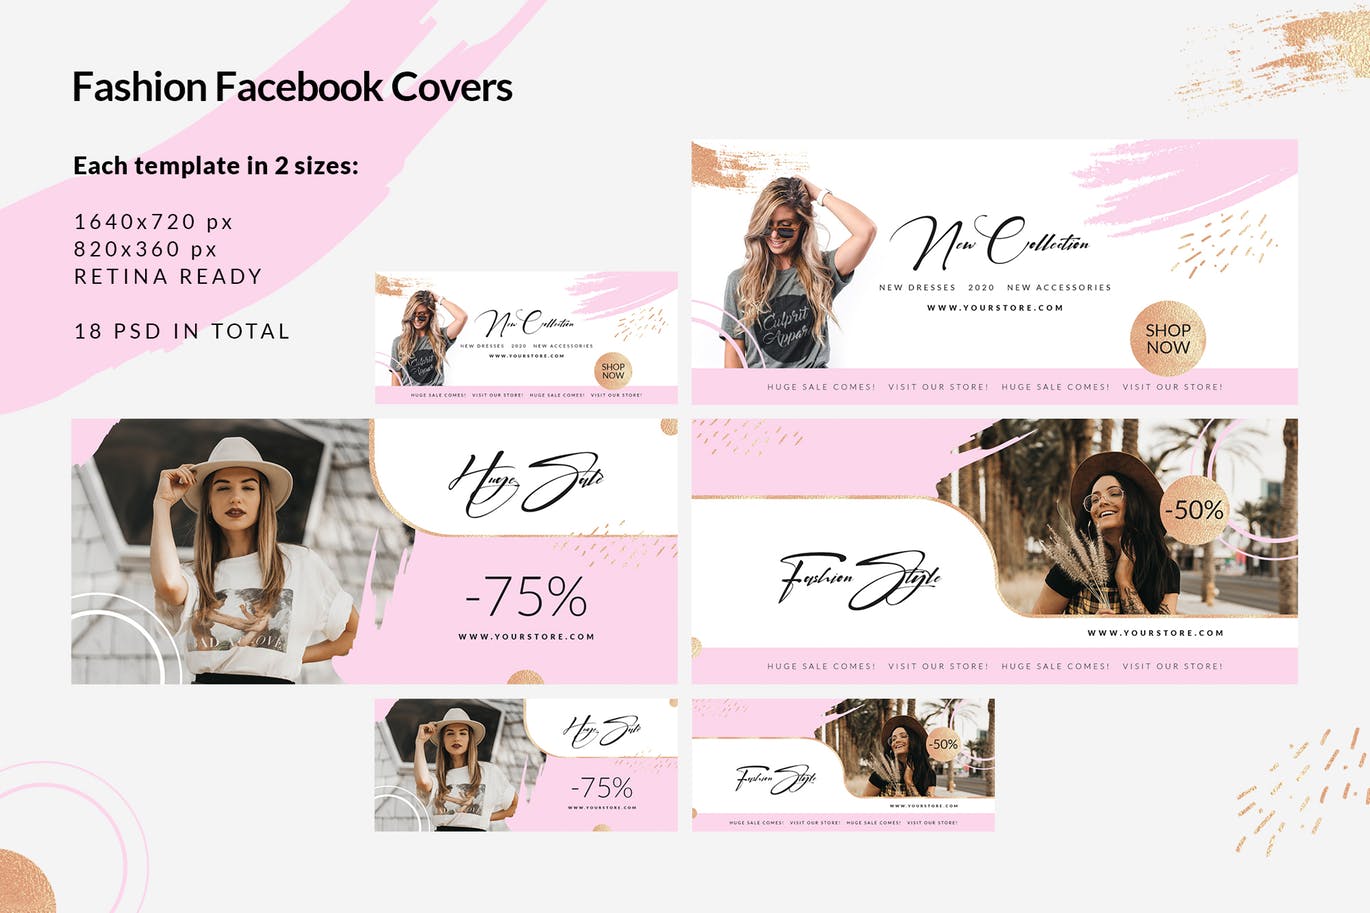 时尚品牌打折促销Facebook封面设计模板第一素材精选 Fashion Facebook Covers插图(2)